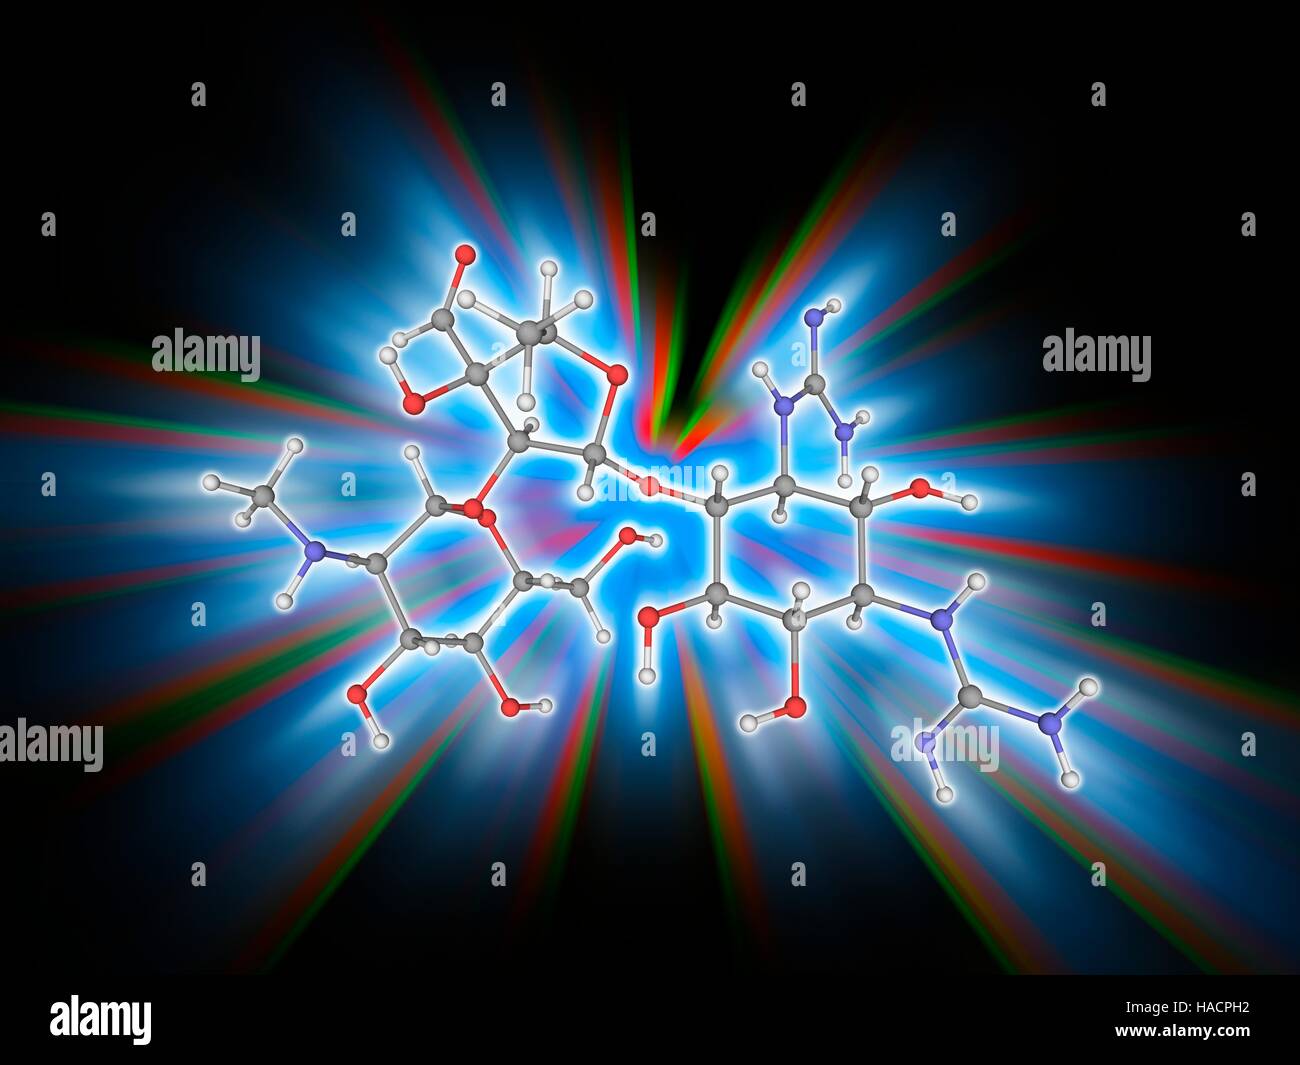 La streptomicina. Il modello molecolare del farmaco antibiotico streptomicina (C21.H39.N7.O12), una proteina inibitore di sintesi che è usato per il trattamento della tubercolosi. Gli atomi sono rappresentati da sfere e sono codificati a colori: carbonio (grigio), Idrogeno (bianco), Azoto (blu) e ossigeno (rosso). Illustrazione. Foto Stock